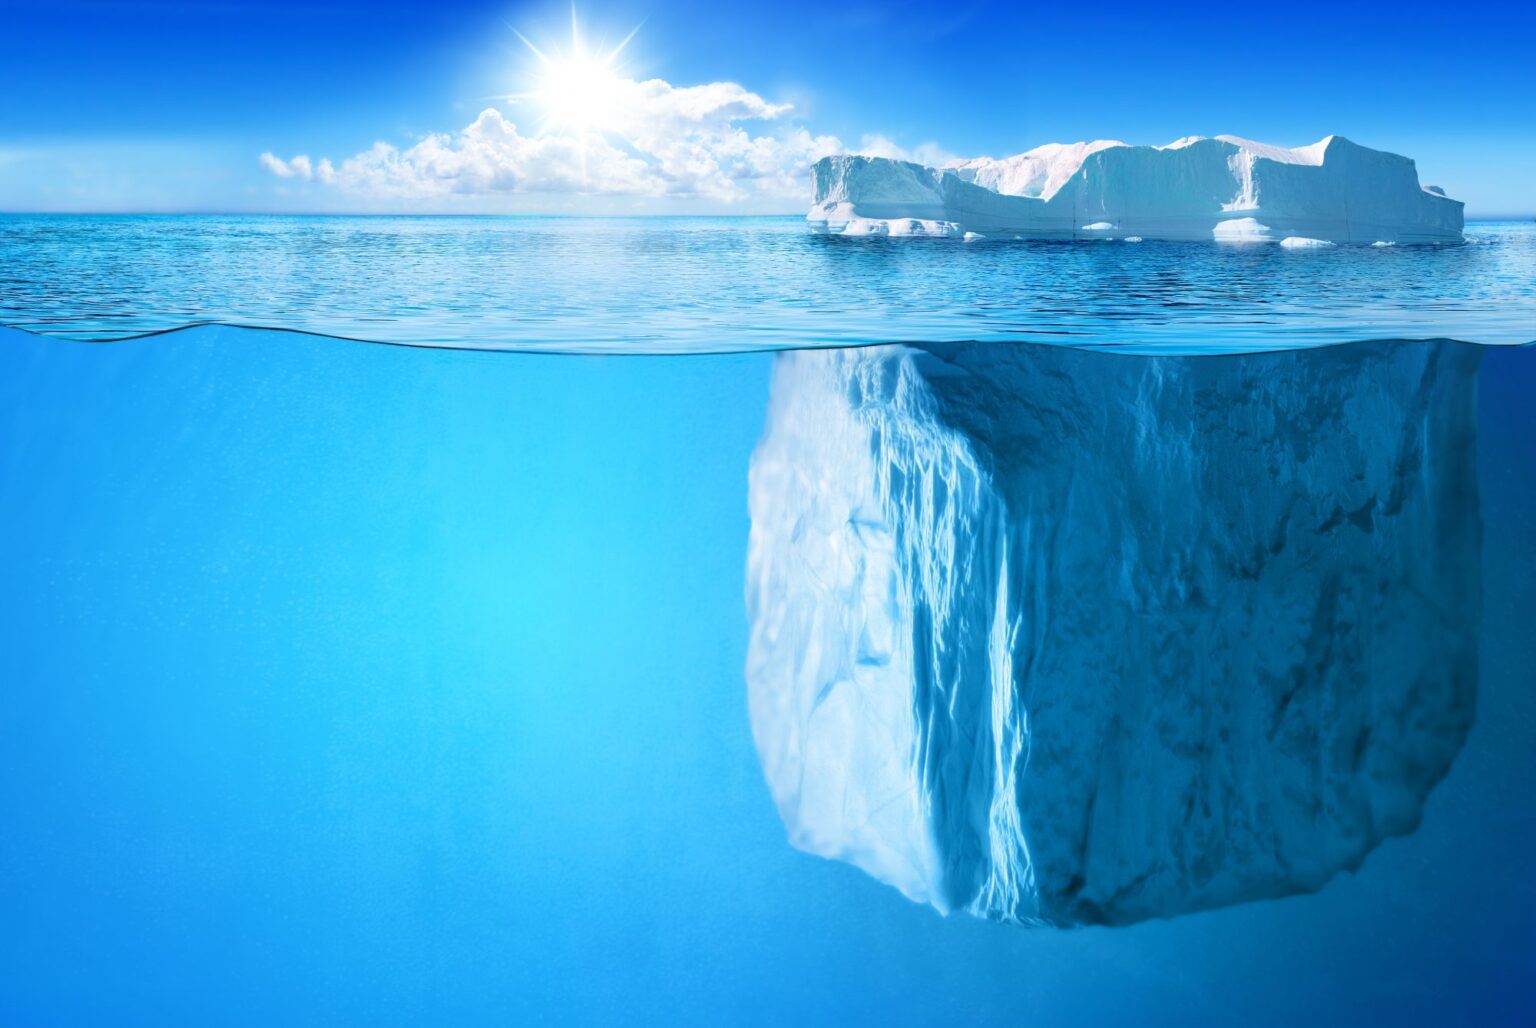 tip of the iceberg